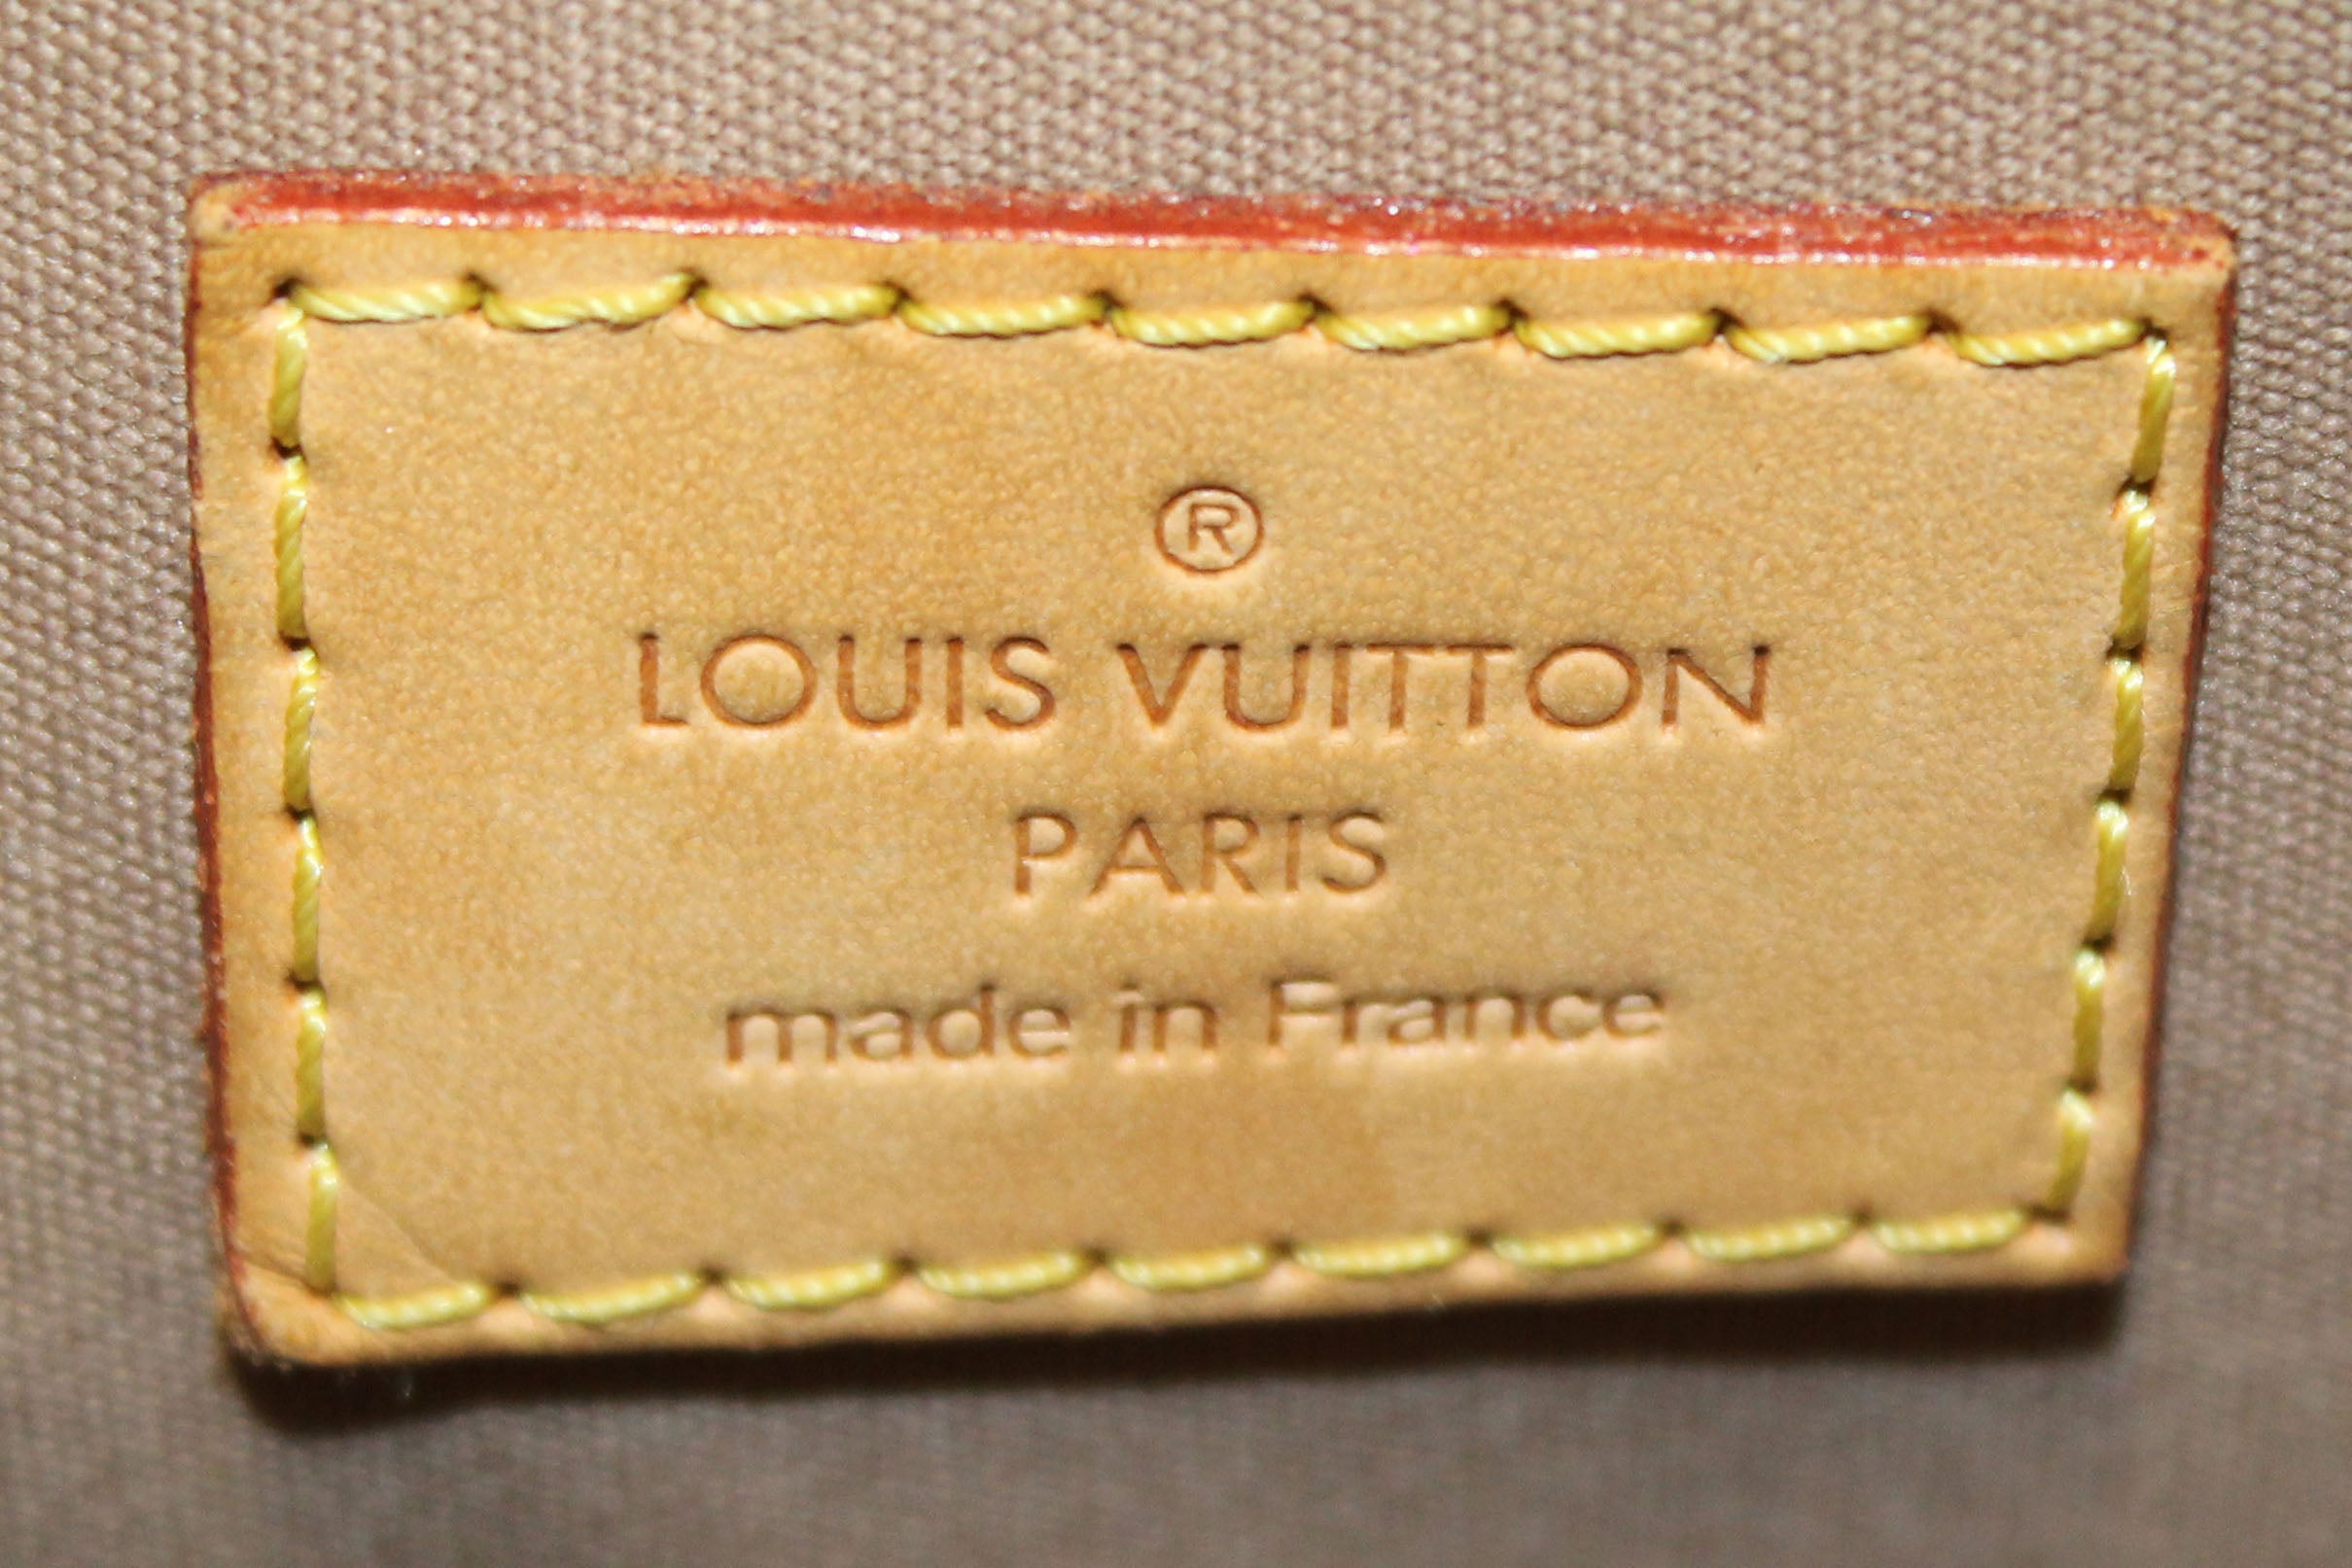 LOUIS VUITTON, sac Alma cuir vernis - Fashion & Haute Couture - Plazzart